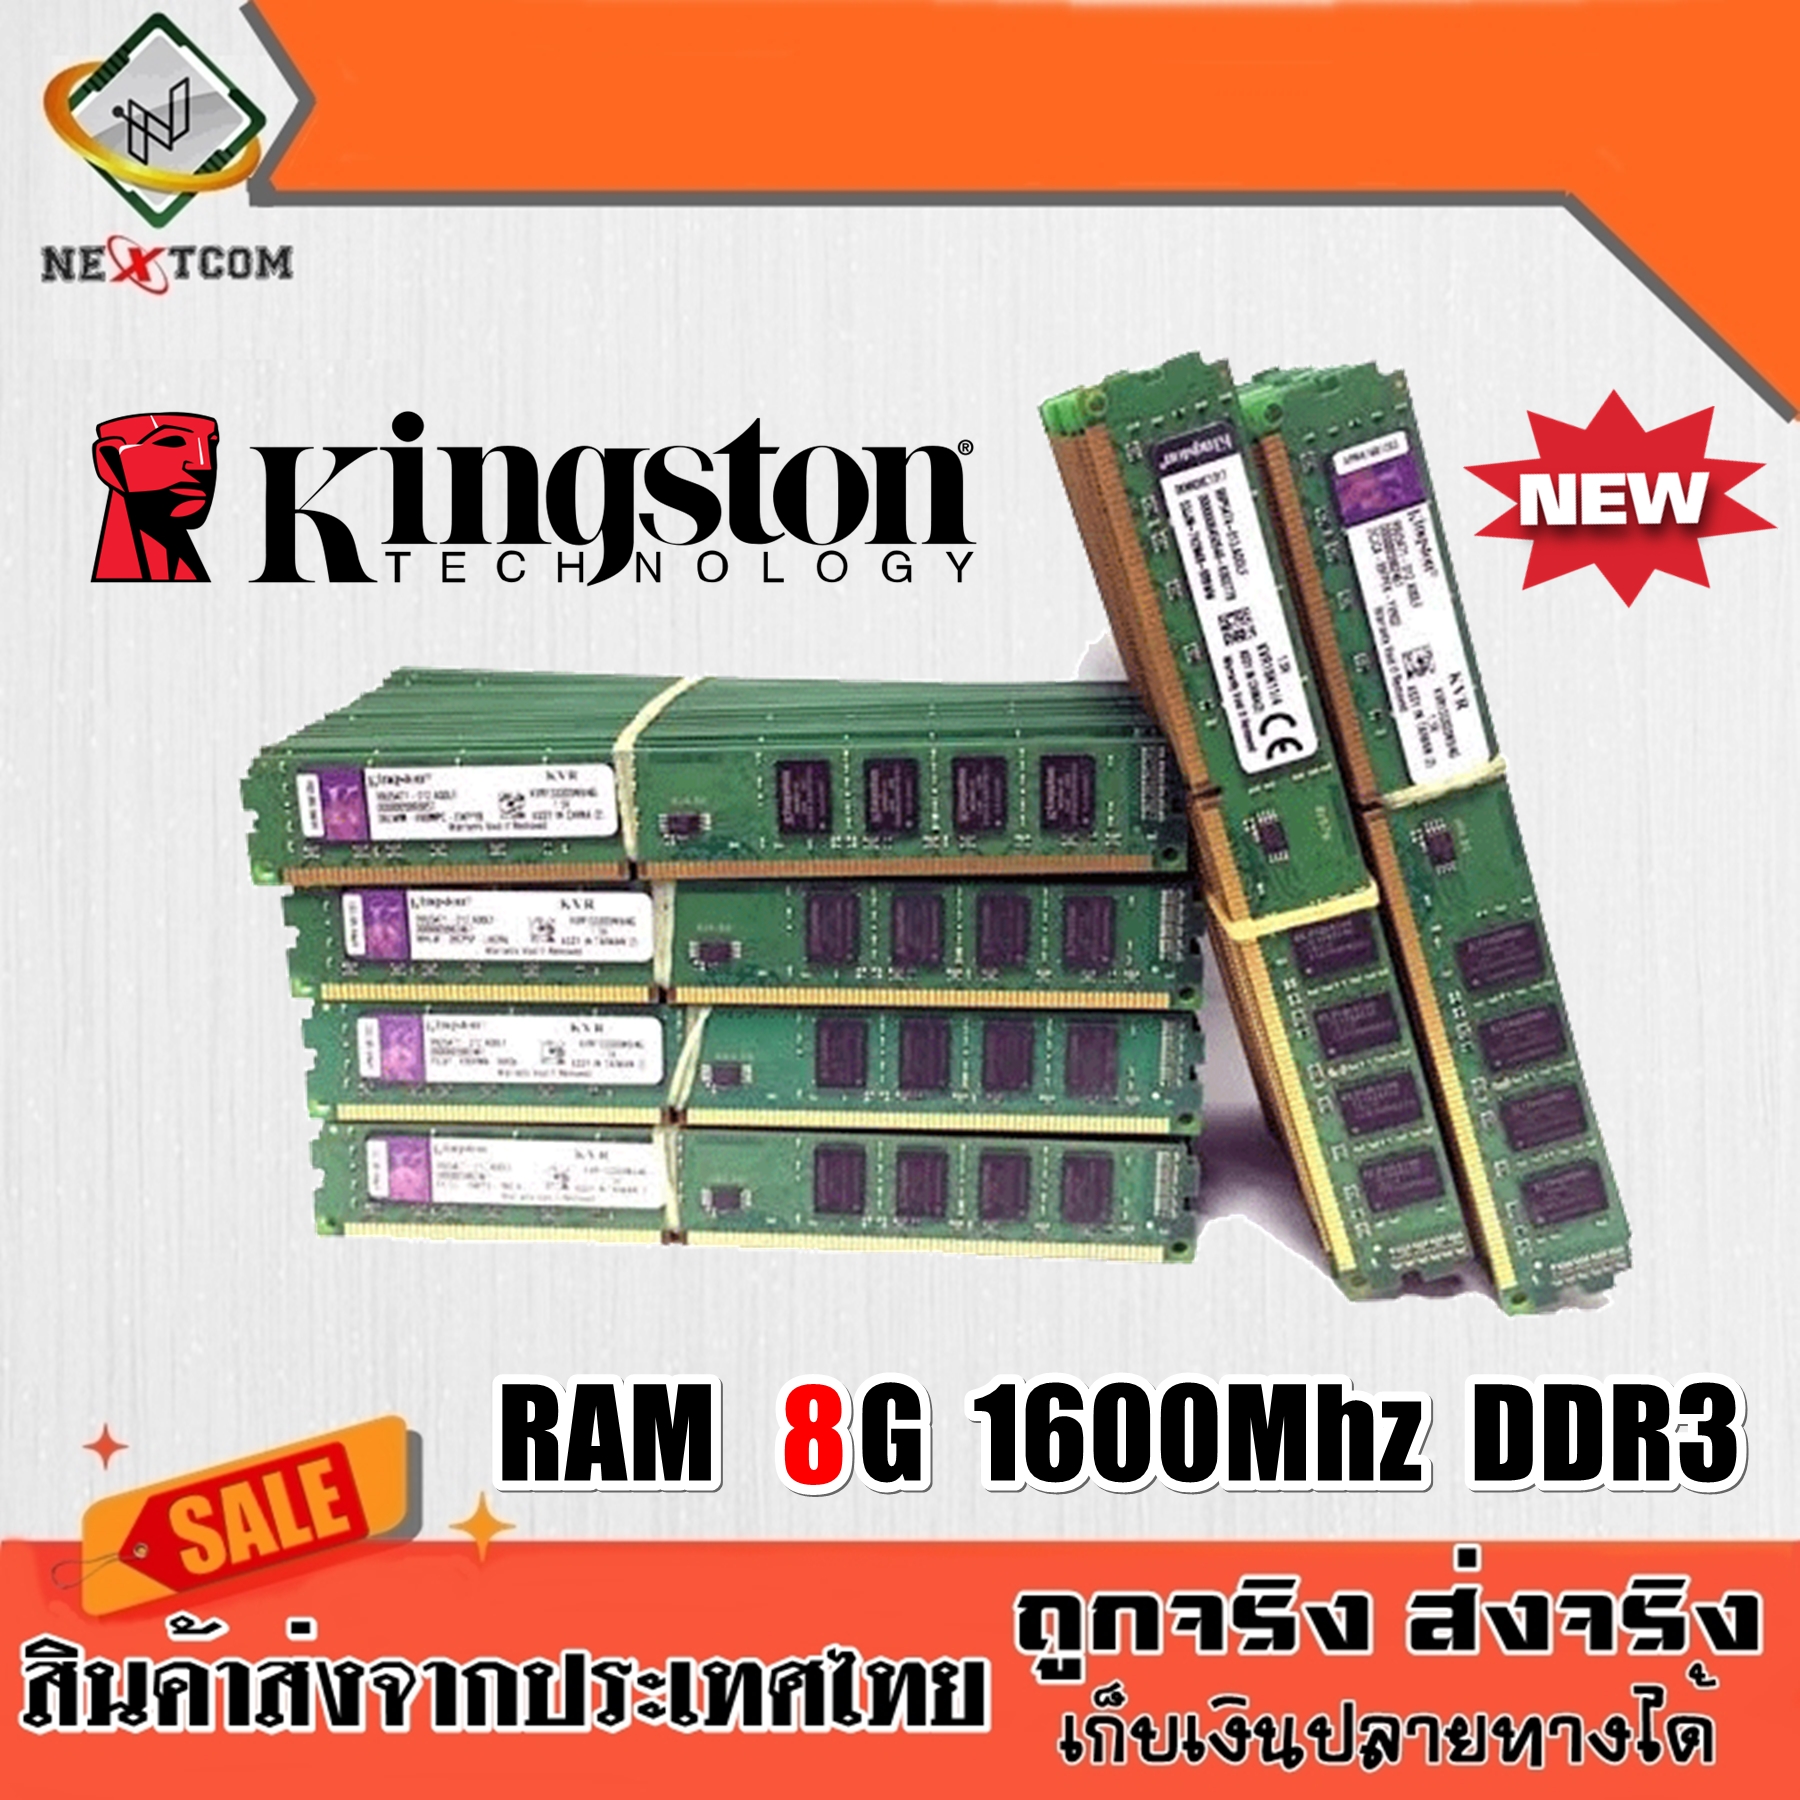 แรม RAM Kingston 8G บัส 1600Mhz DDR3 16ชิพ ของแท้ 100% รับประกัน 6 เดือน จัดส่งไว